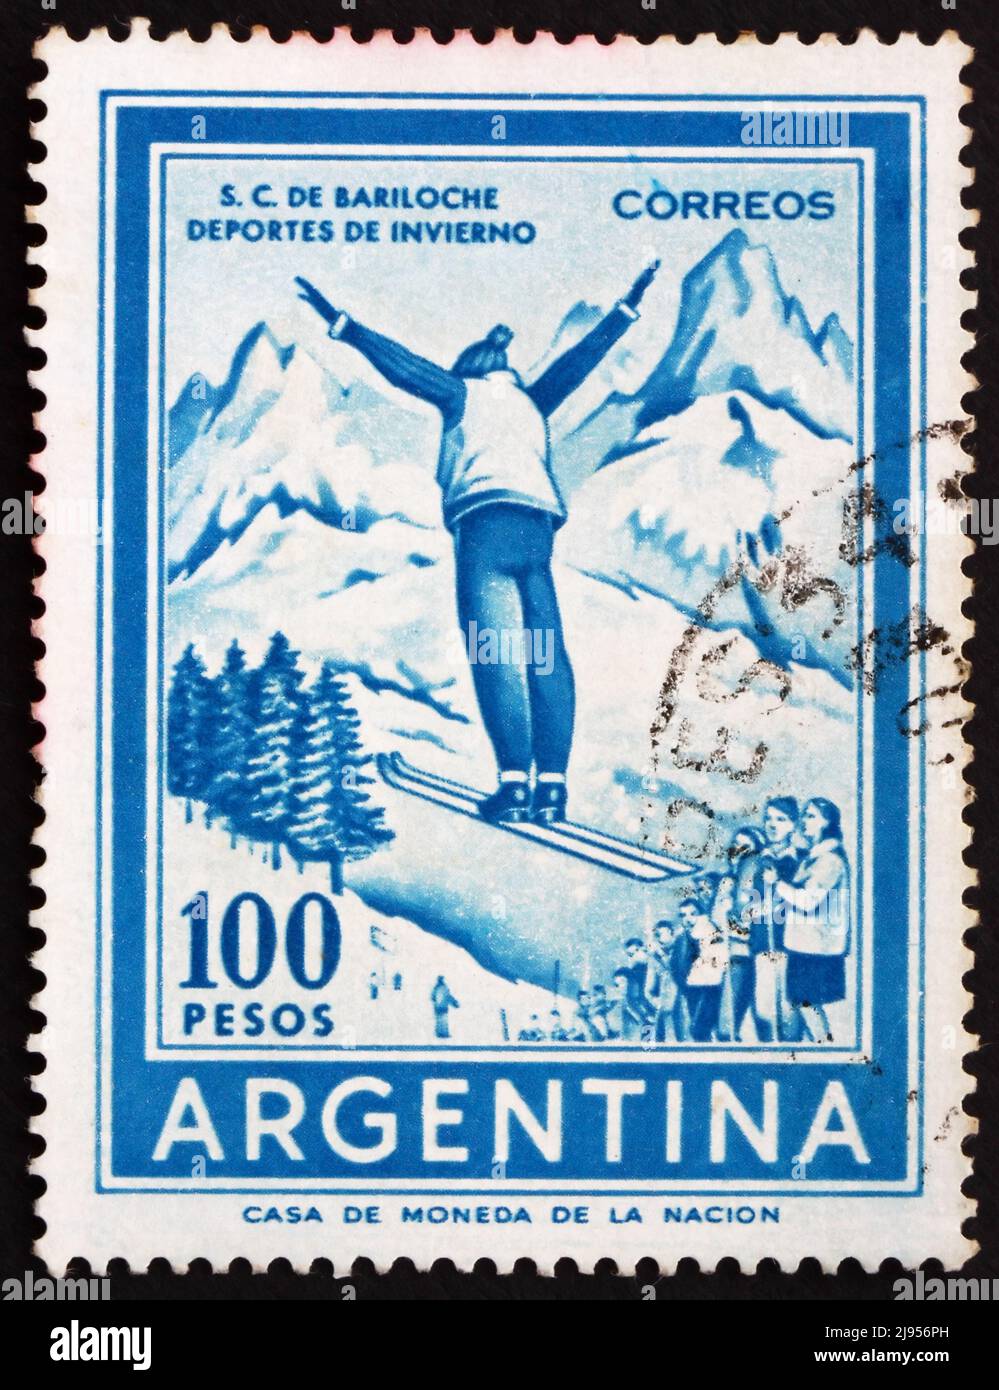 ARGENTINA - ALREDEDOR de 1961: Un sello impreso en la Argentina Shows Ski Jumper, alrededor de 1961 Foto de stock